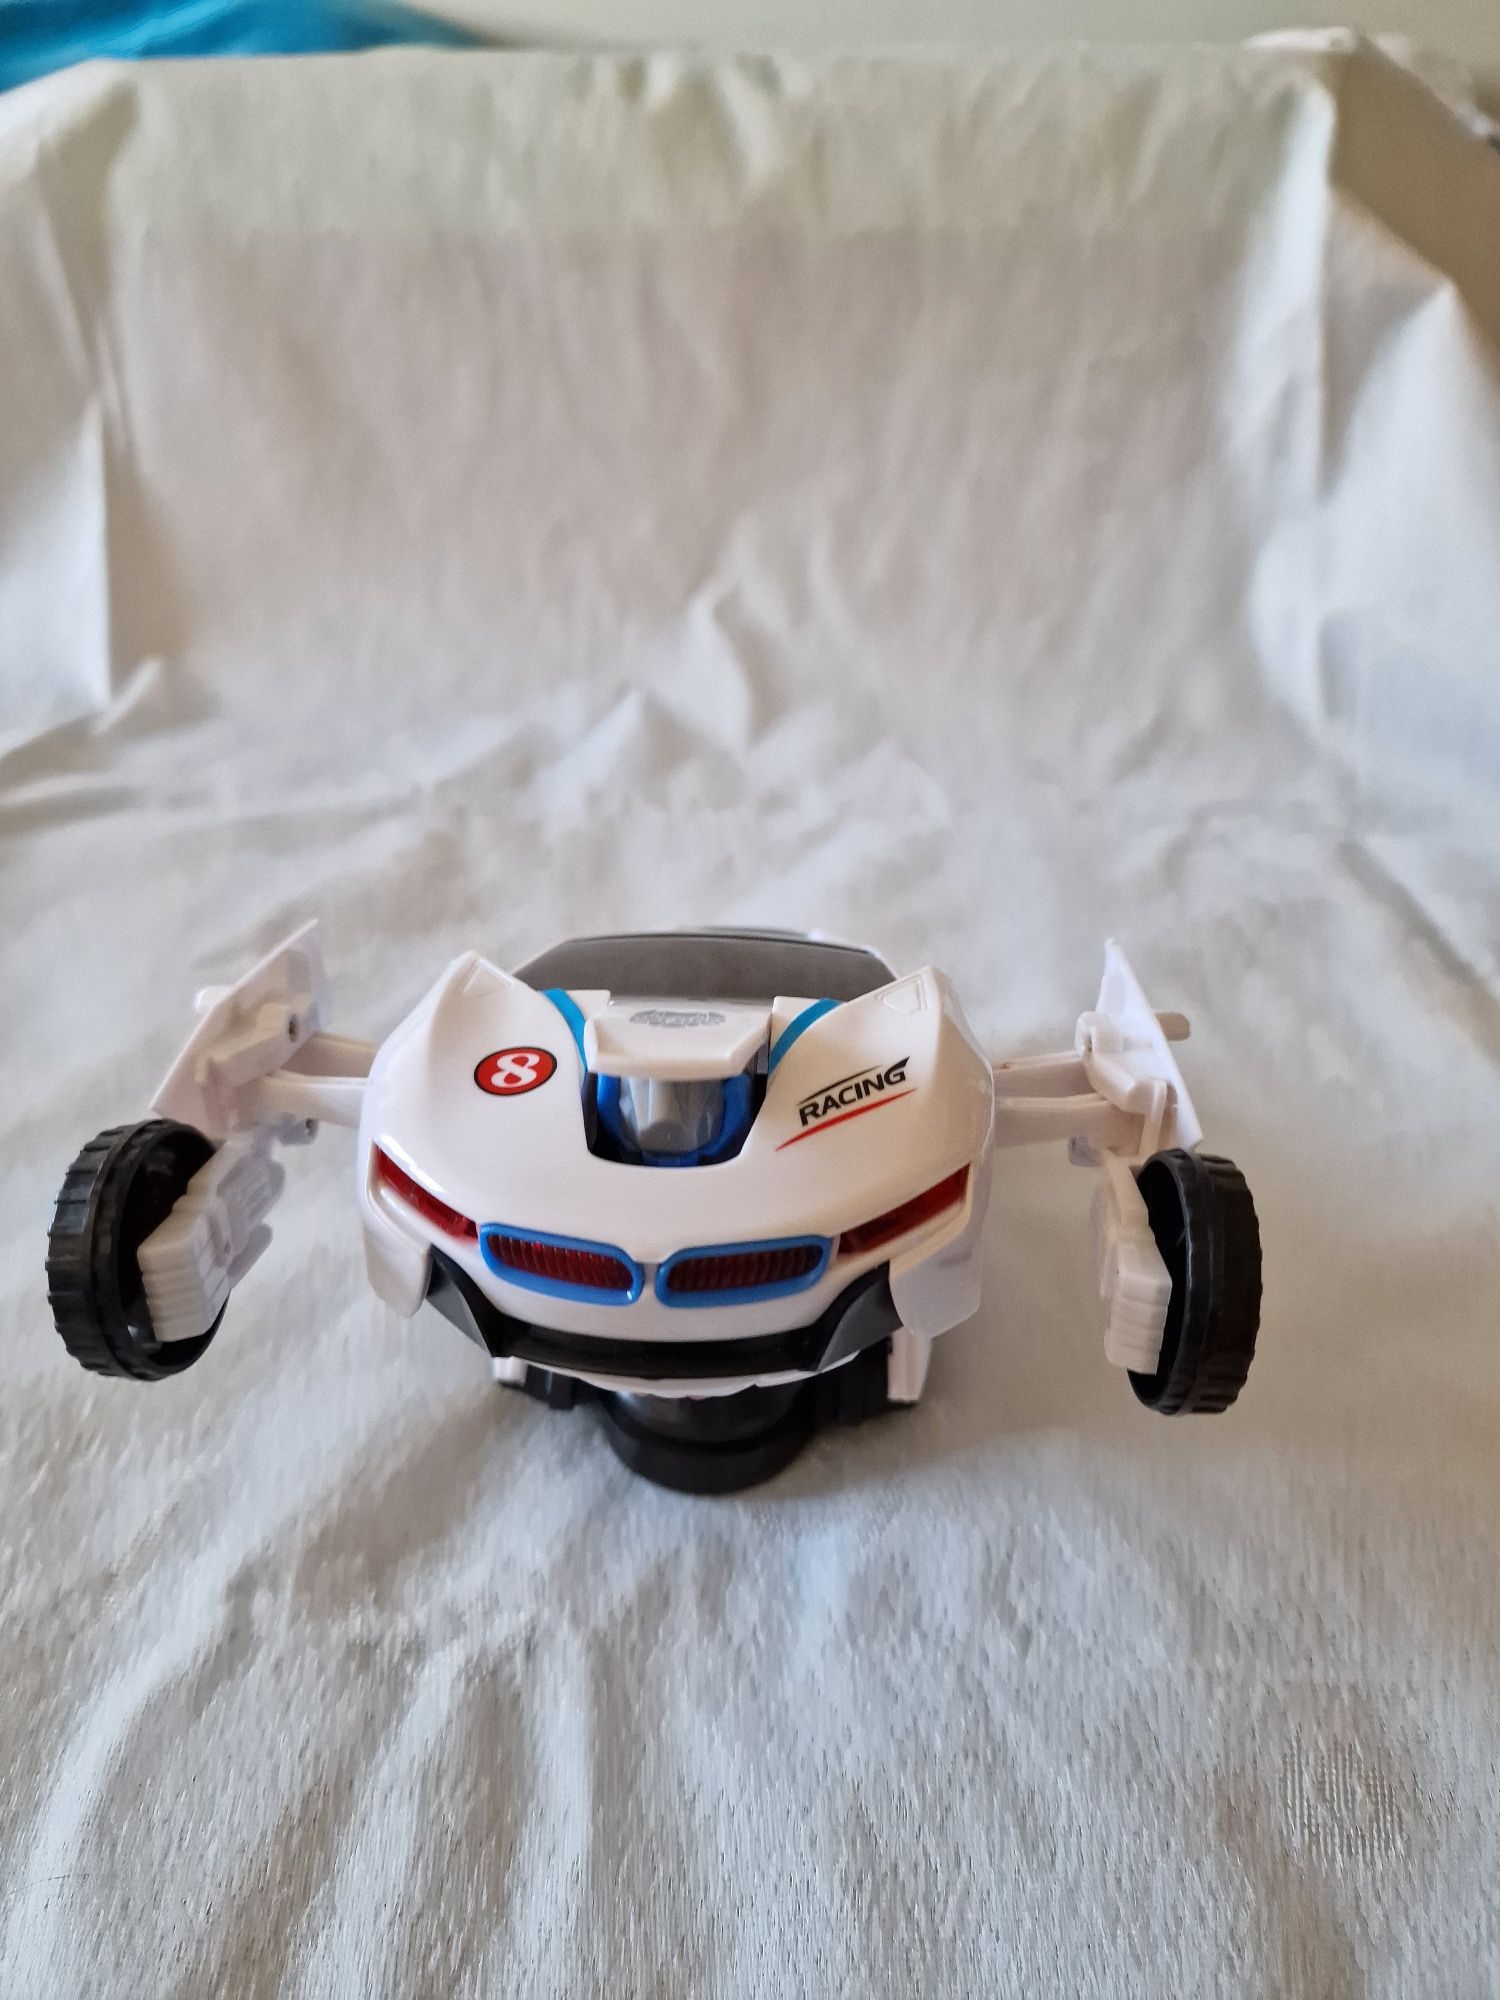 Carro de brinquedo que se transforma em Robot